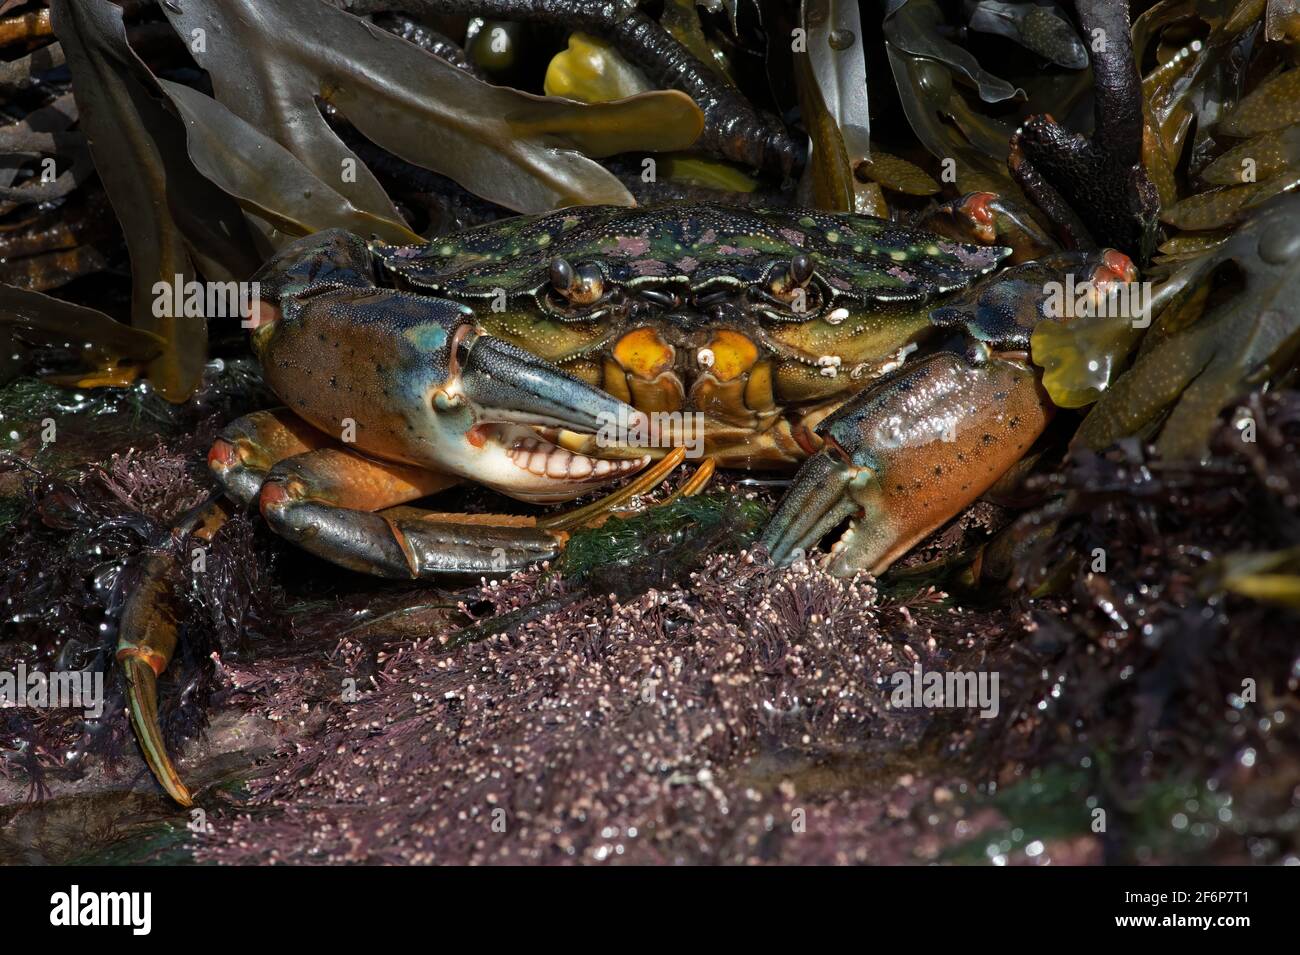 Europäische Grüne Krabbe (Carcinus maenas), 73 einzelne Bilder mit einem Vergrößerungsverhältnis von 1:1 gestapelt, um immense Details und Schärfentiefe zu liefern Stockfoto